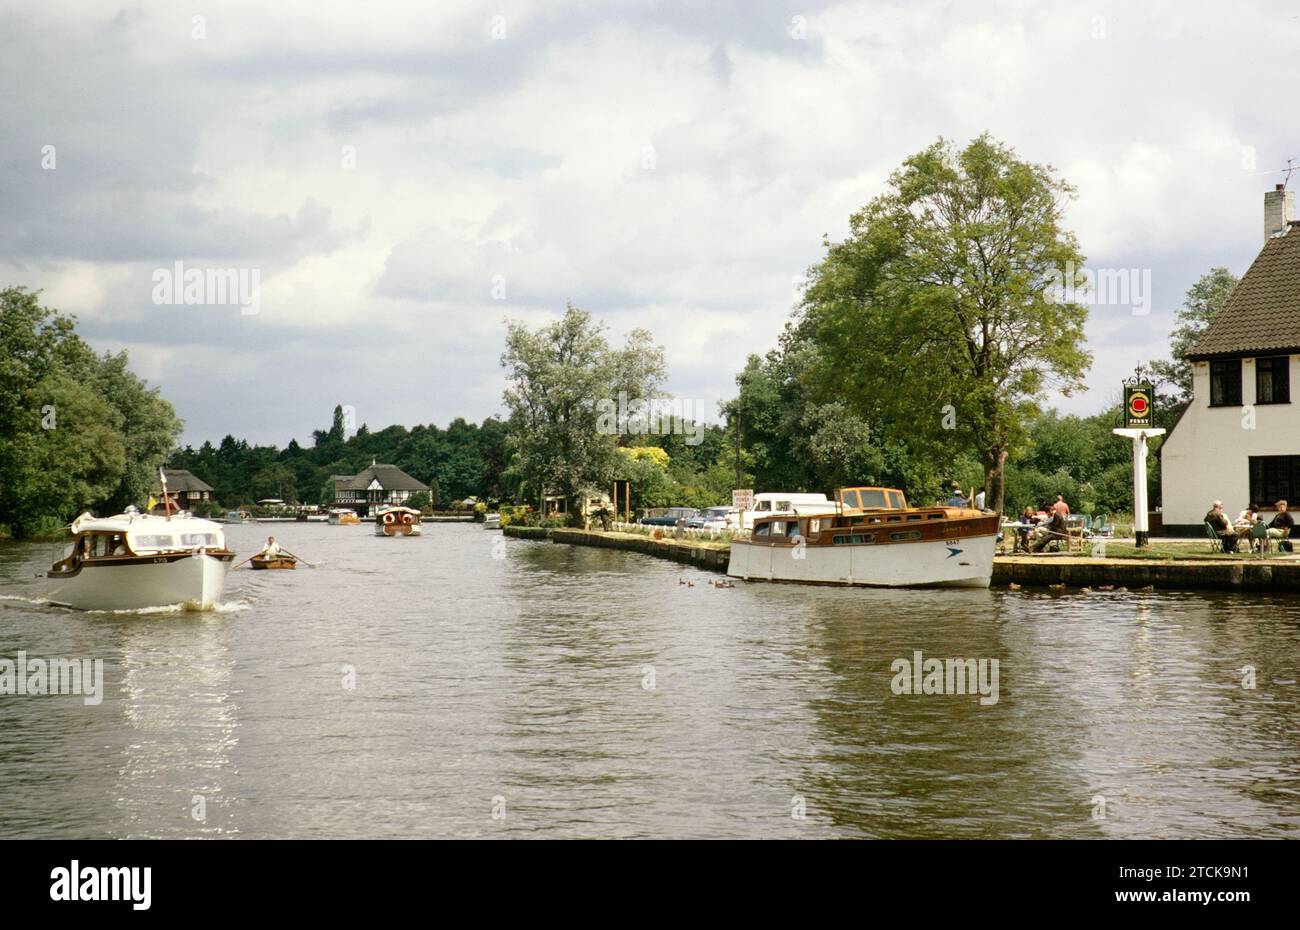 Barche e case storiche nel villaggio di Horning, Norfolk Broads, Norfolk, Inghilterra, Regno Unito, luglio 1970 Foto Stock